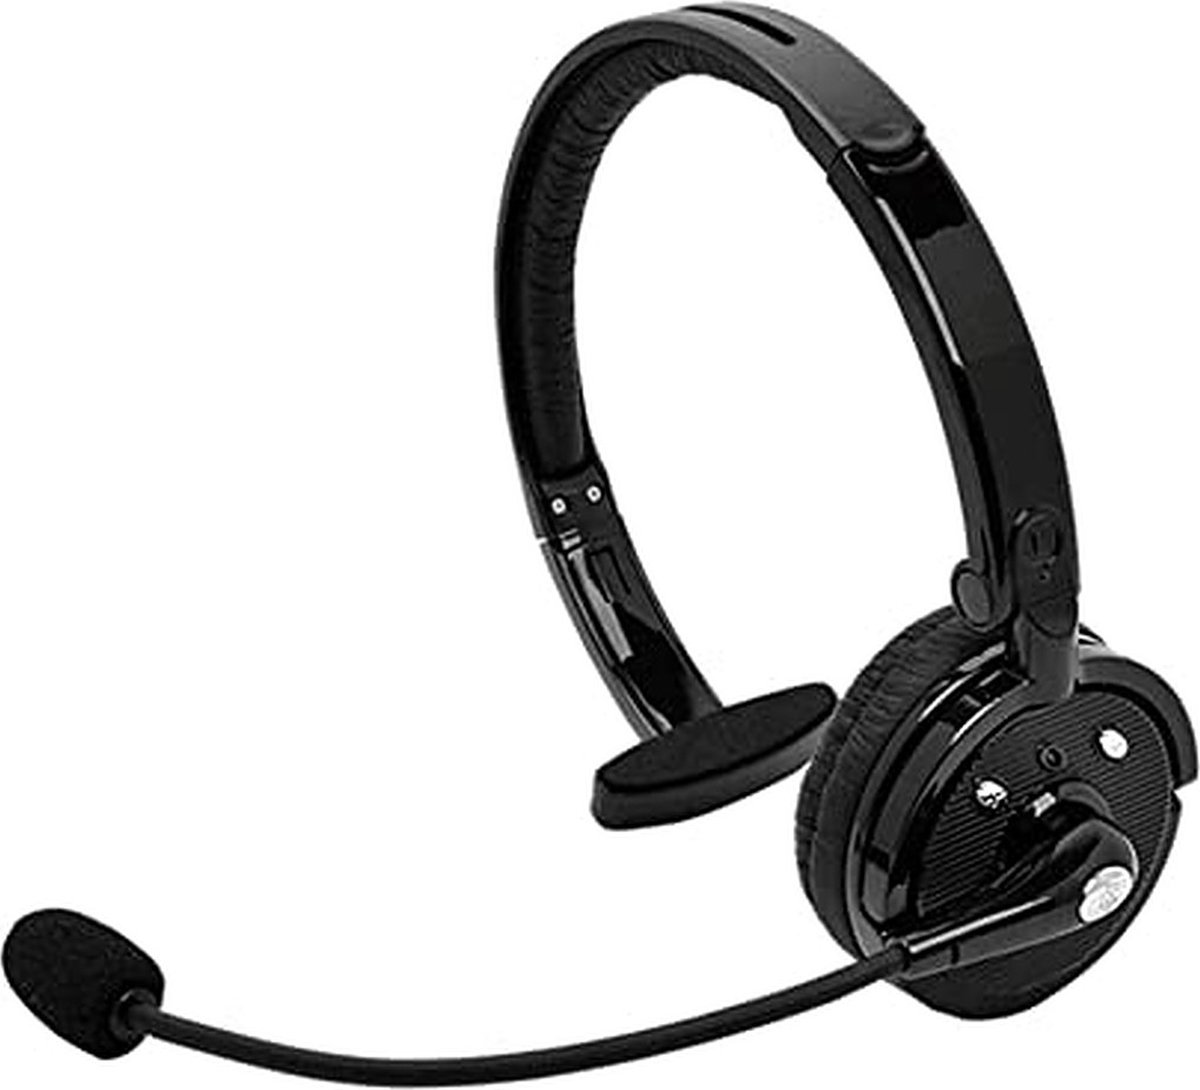 Draadloze headset - Draadloze Koptelefoon - Bluetooth - Computer headset